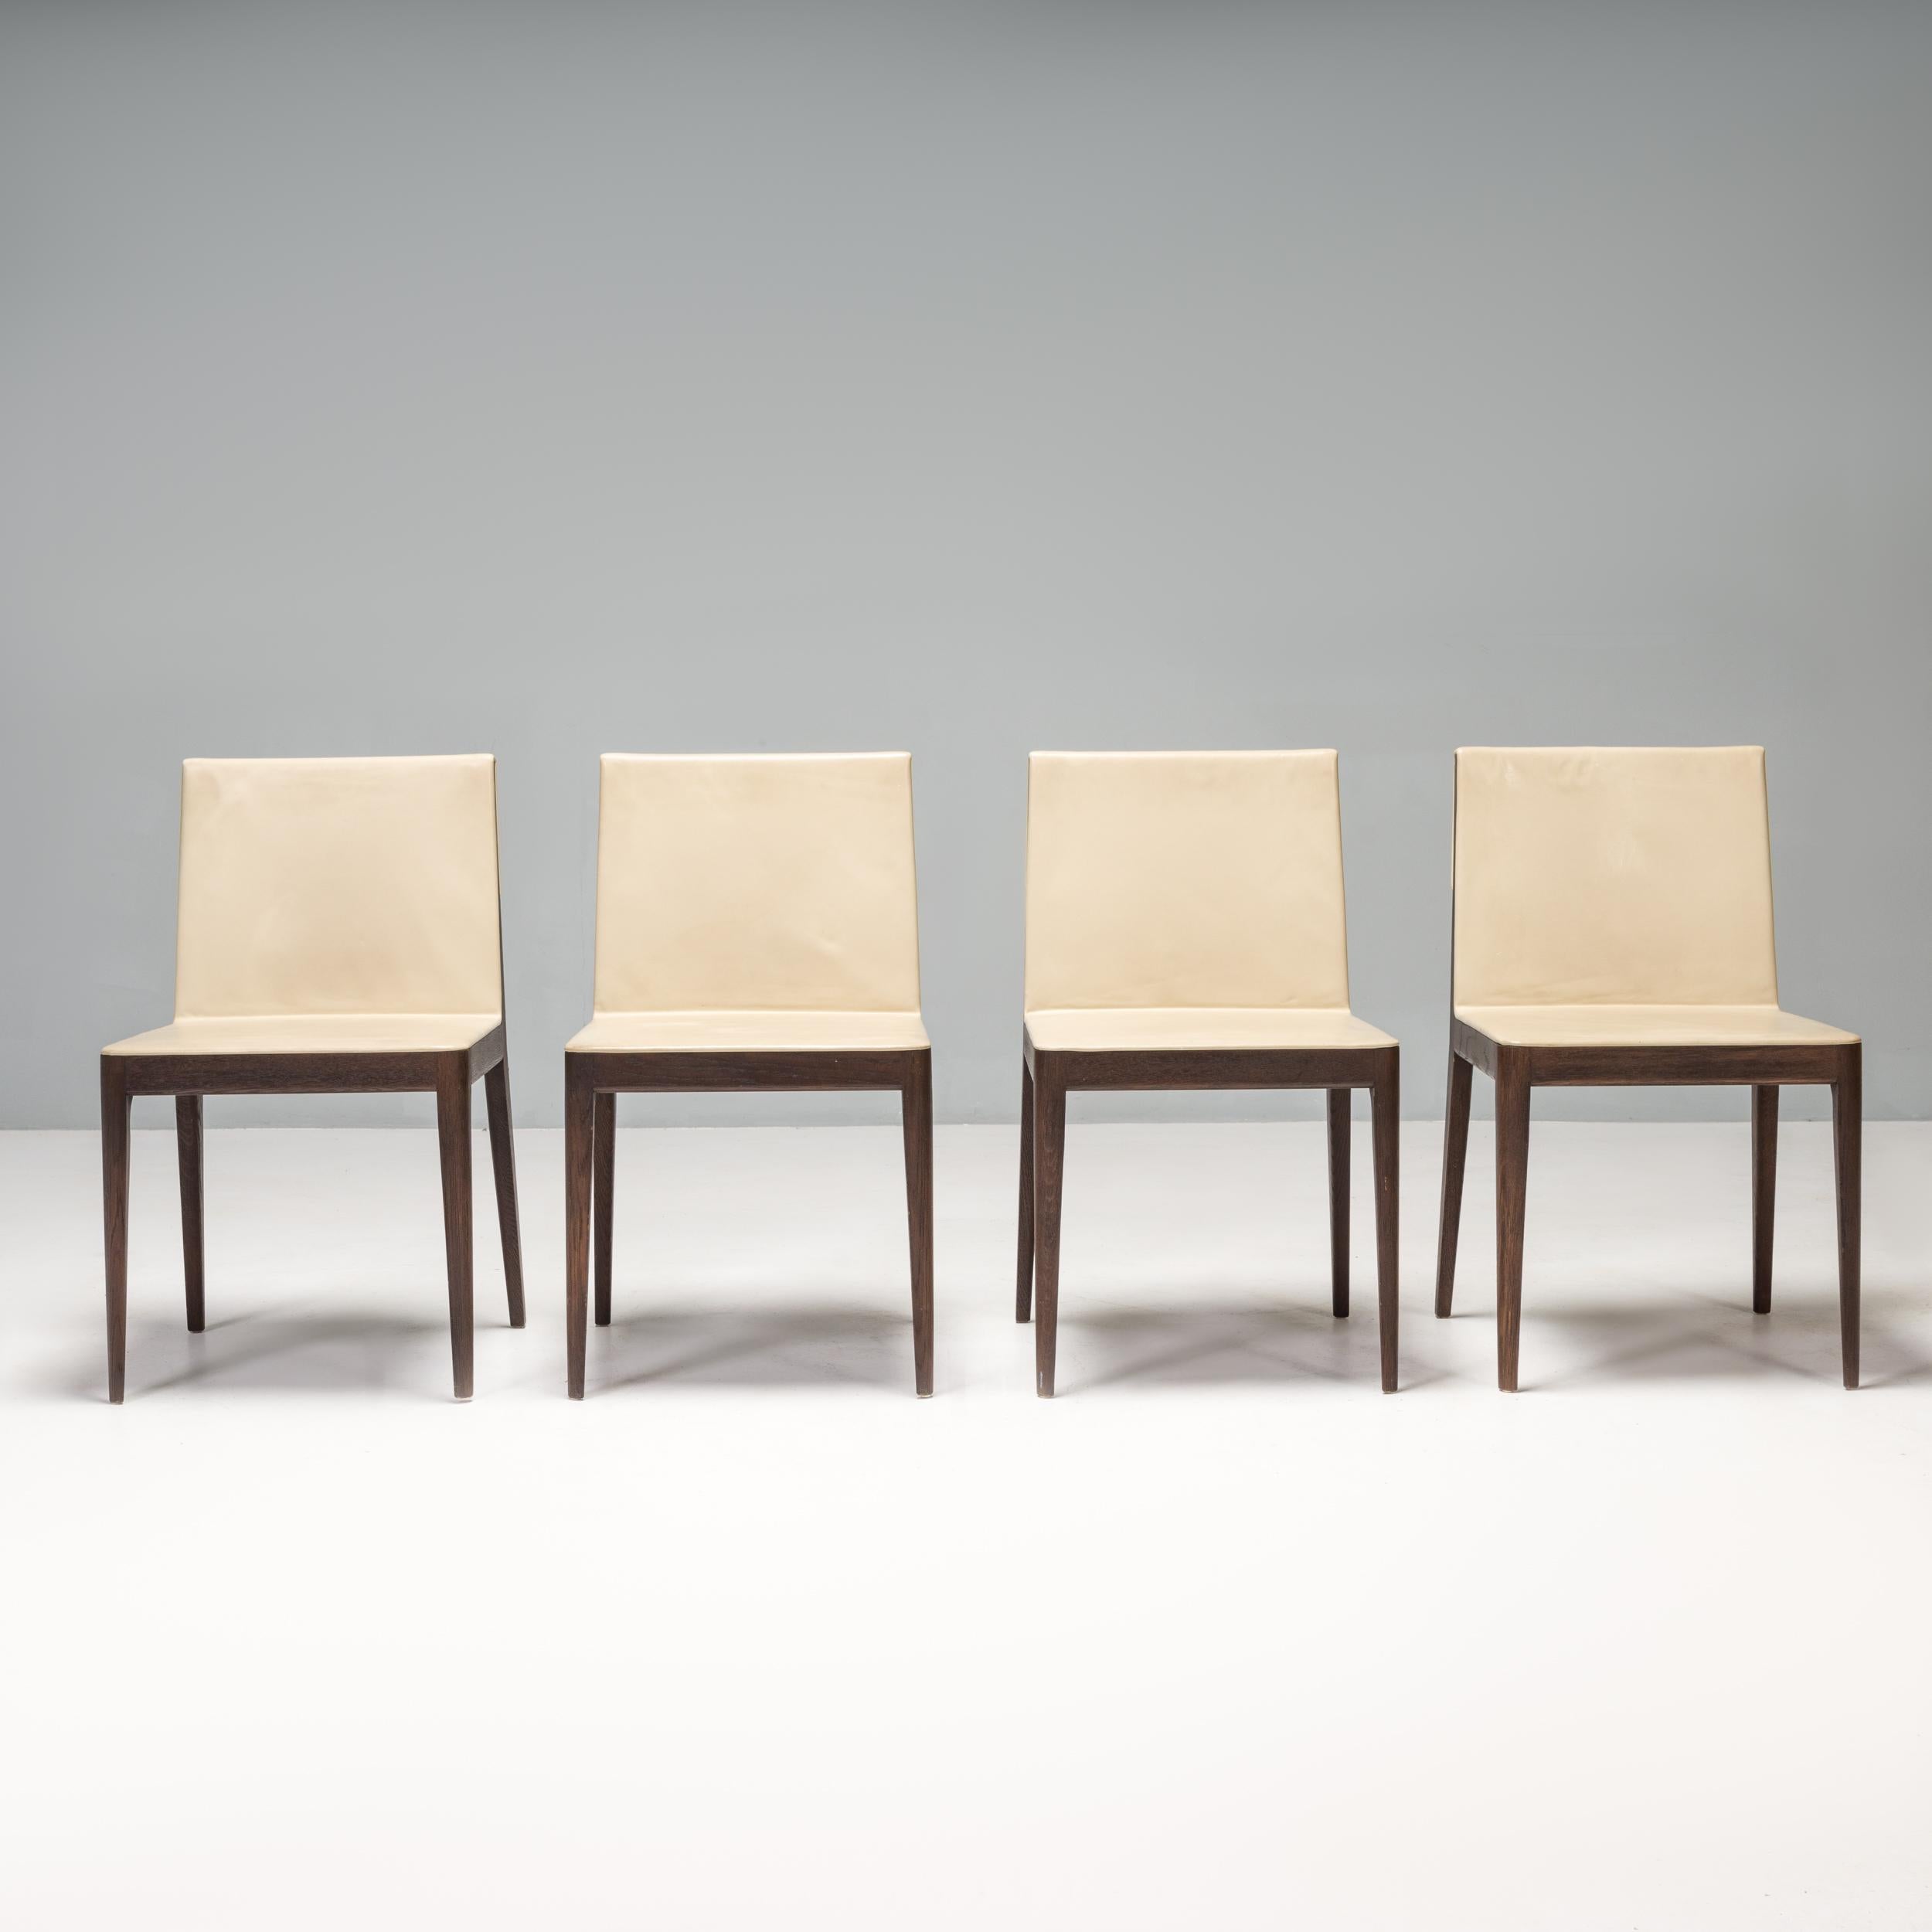 Conçue à l'origine par Antonio Citterio en 2009 pour B&B Italia, la chaise de salle à manger EL est une pièce de design élégante et sophistiquée.

Ces chaises à la silhouette épurée sont dotées d'un cadre en chêne massif fumé et teinté et d'une